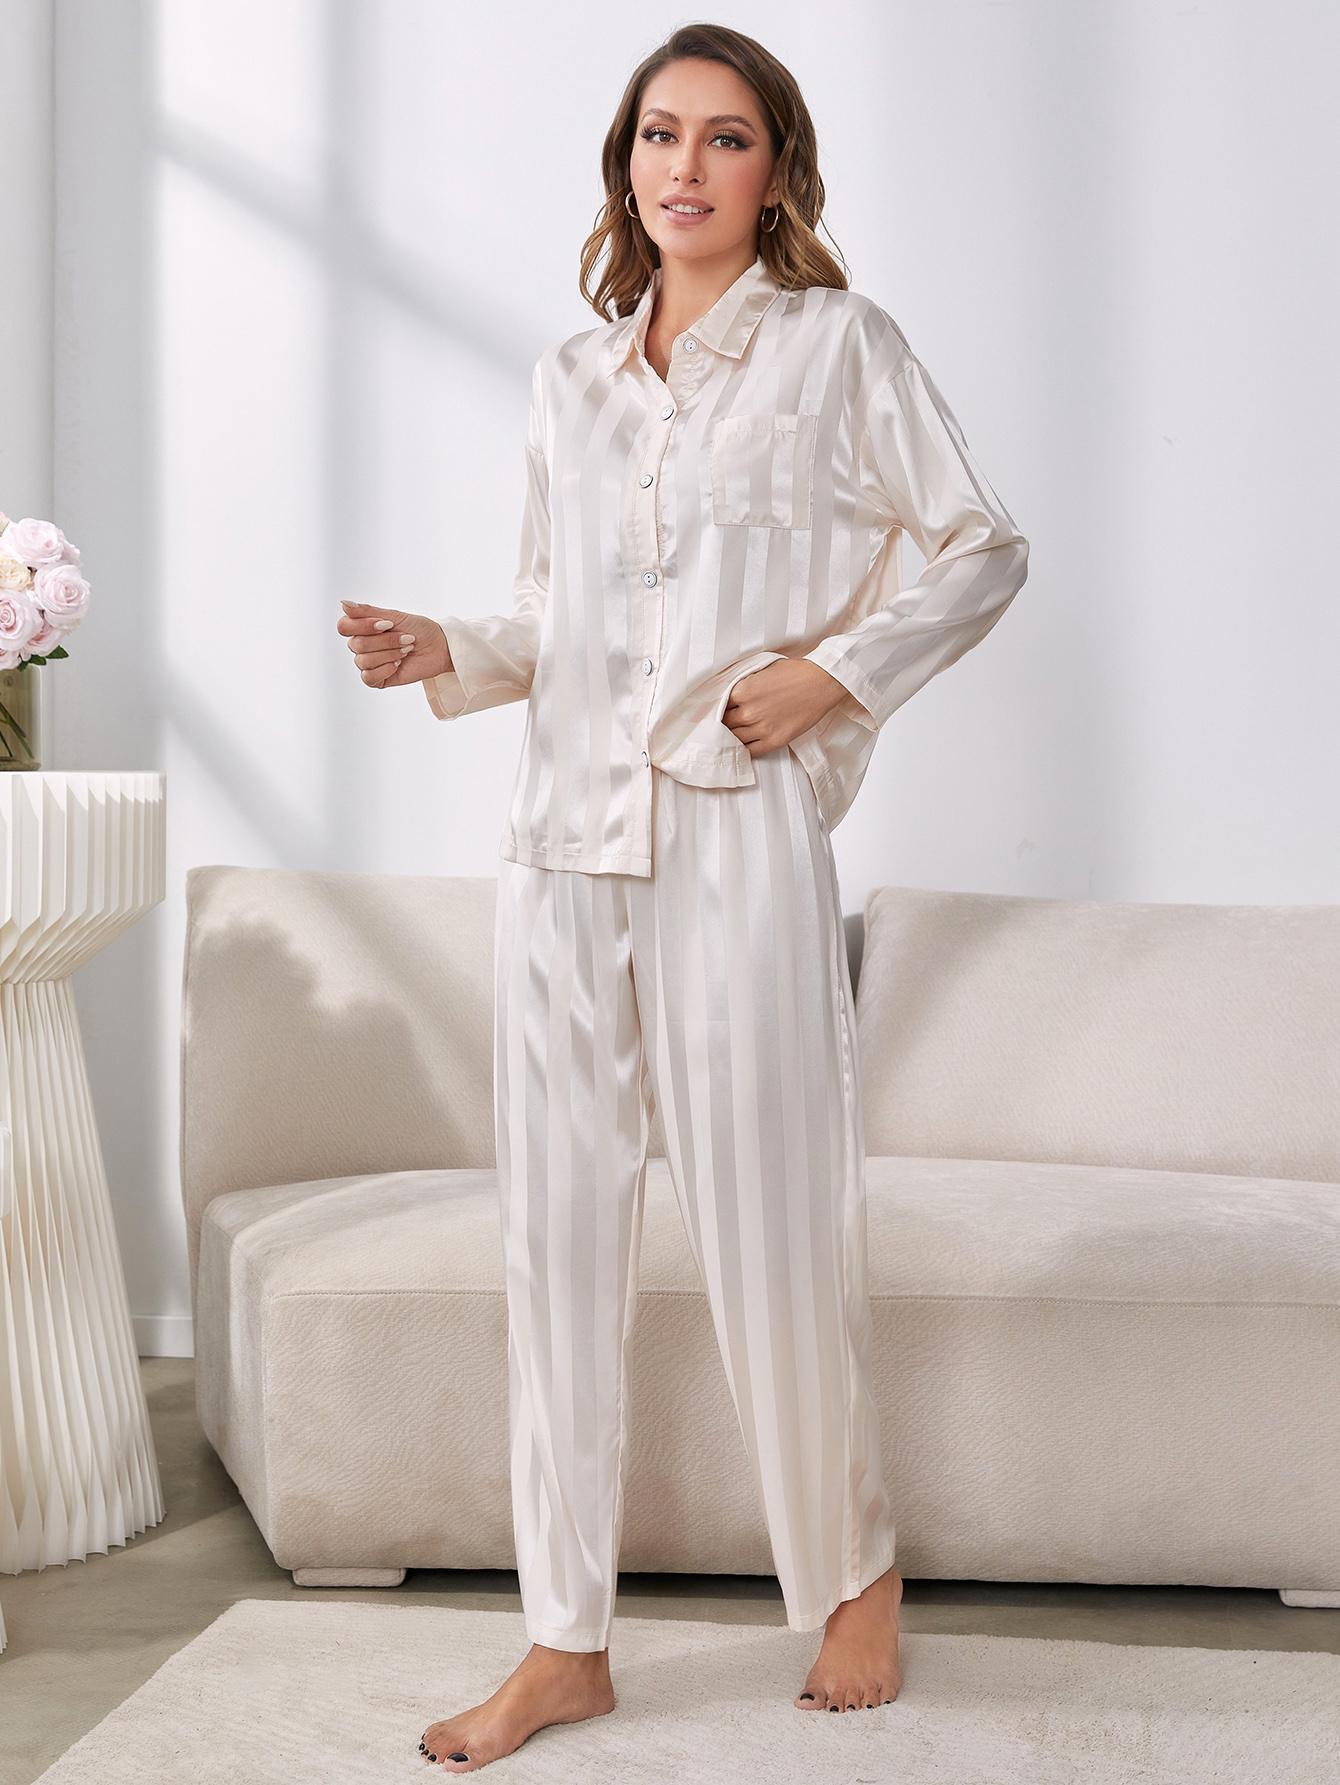 Model standing wearing white striped pajama set